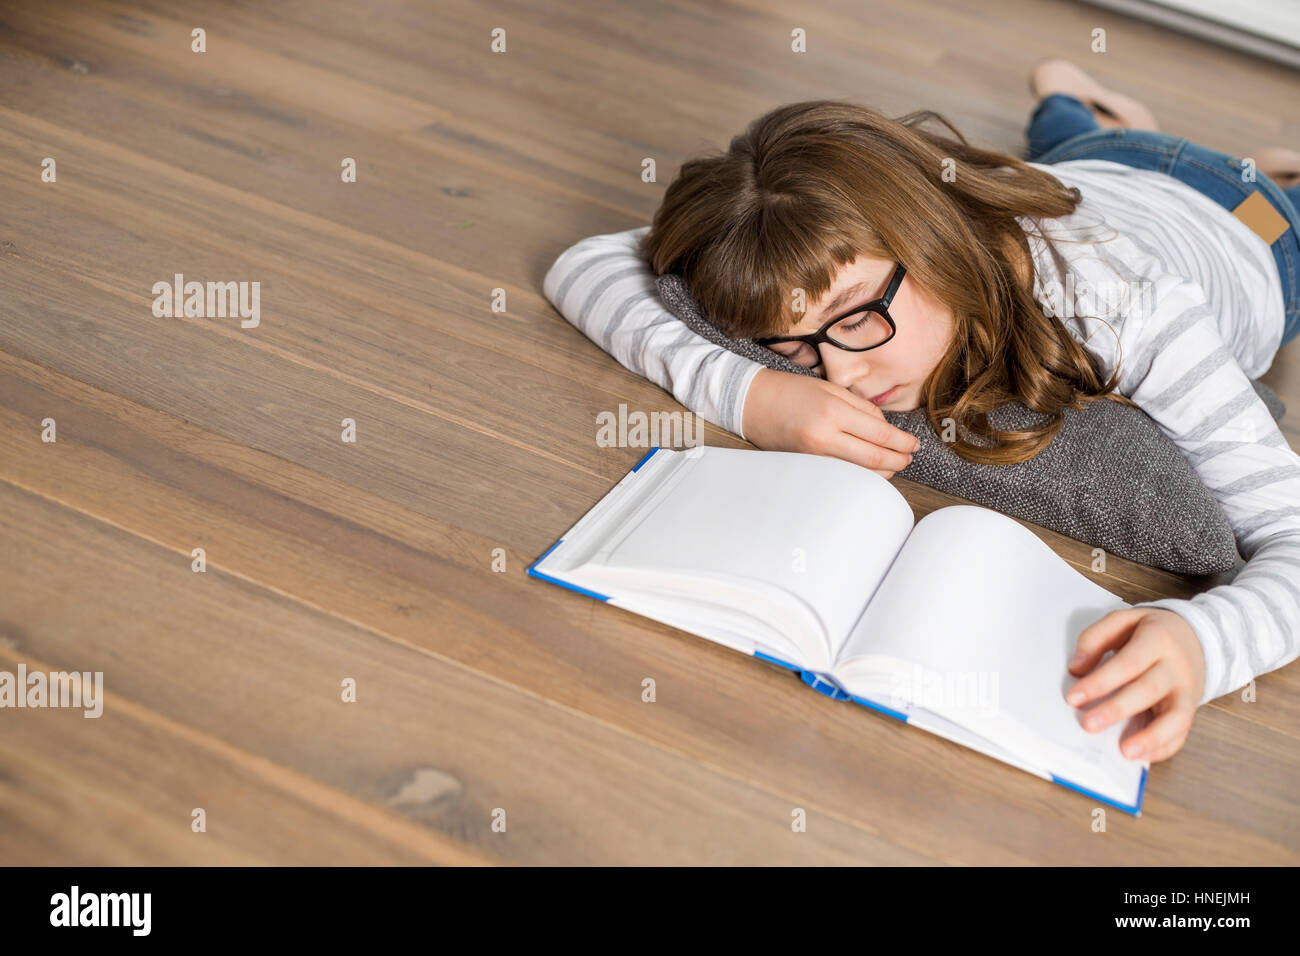 Un alto ángulo de visualización de adolescente durmiendo mientras estudiaba en el piso Foto de stock